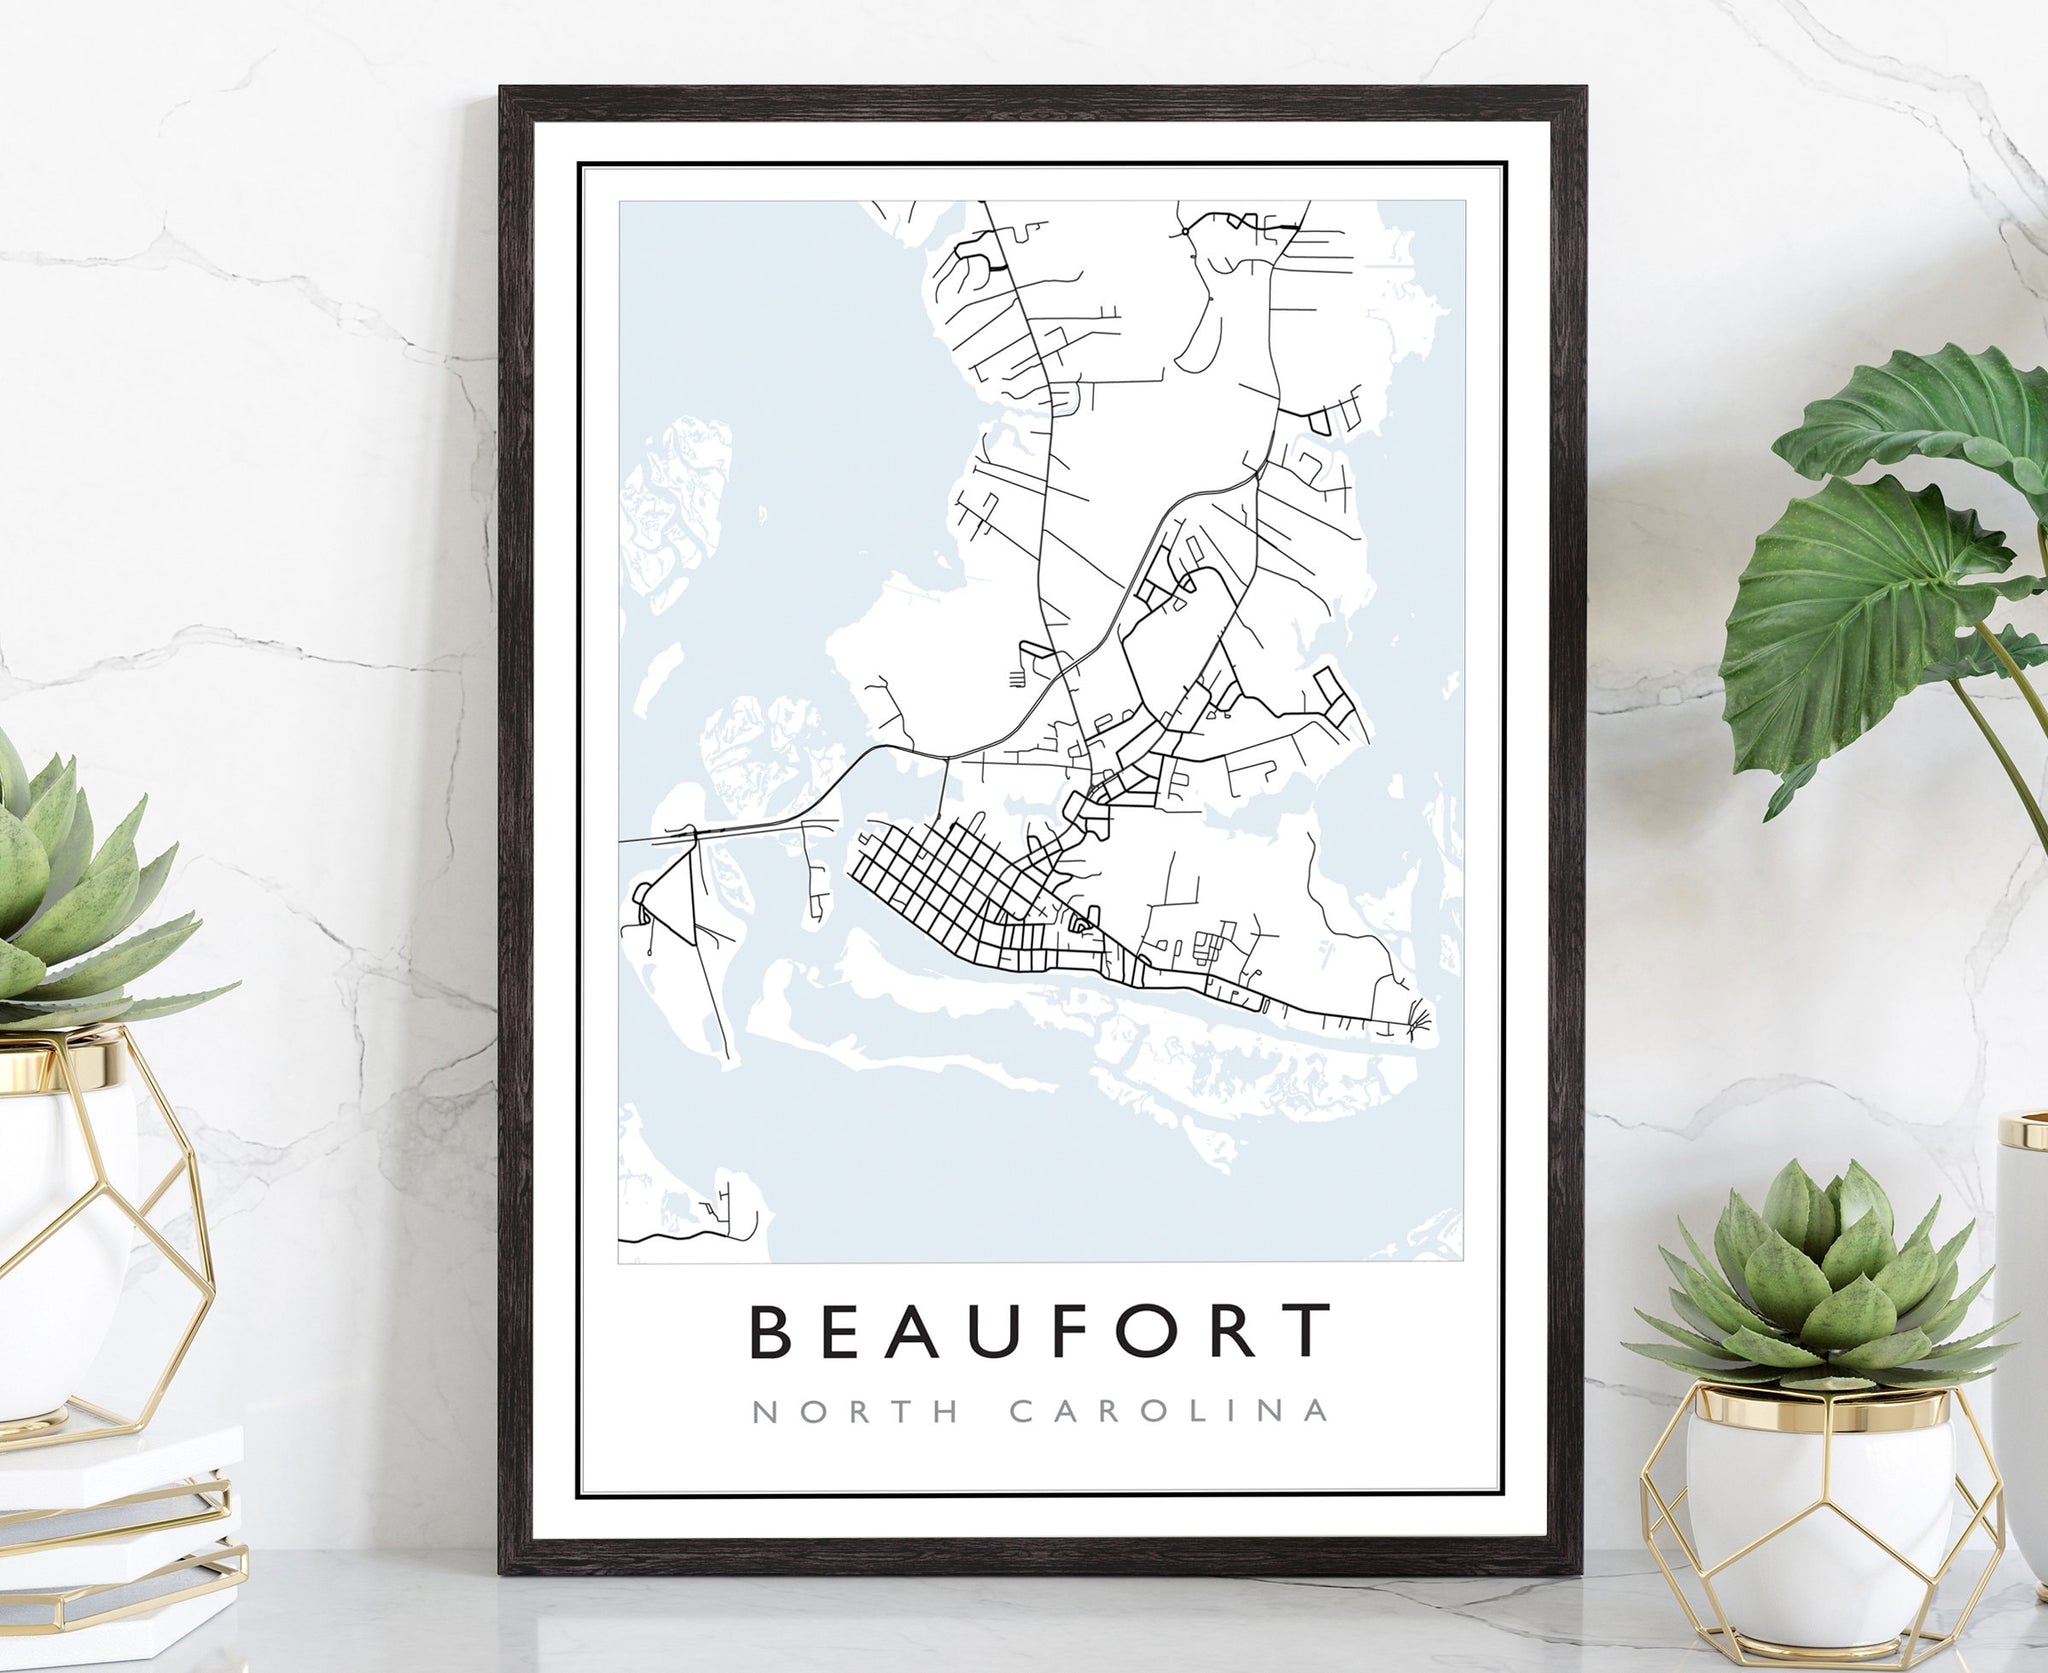 Beaufort Map,Beaufort City Road Map Poster, Beaufort North Carolina City Street Map,Modern US City Map,Home Art Decor, Office Wall Art Print